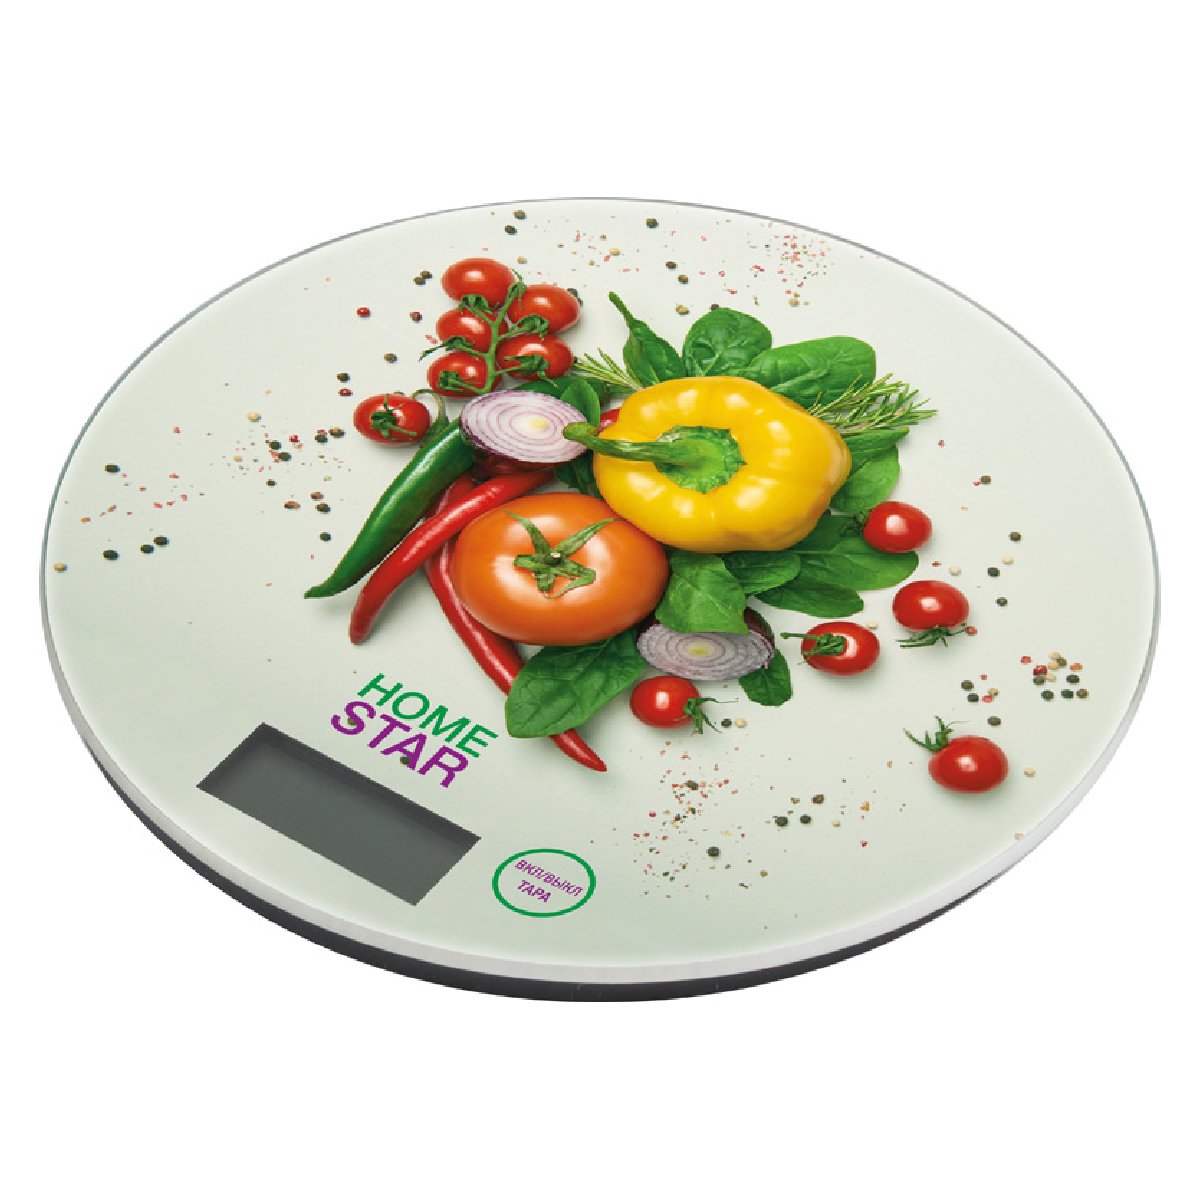 Весы кухонные электронные HOMESTAR HS-3007S, 7 кг овощи (101221)Купить